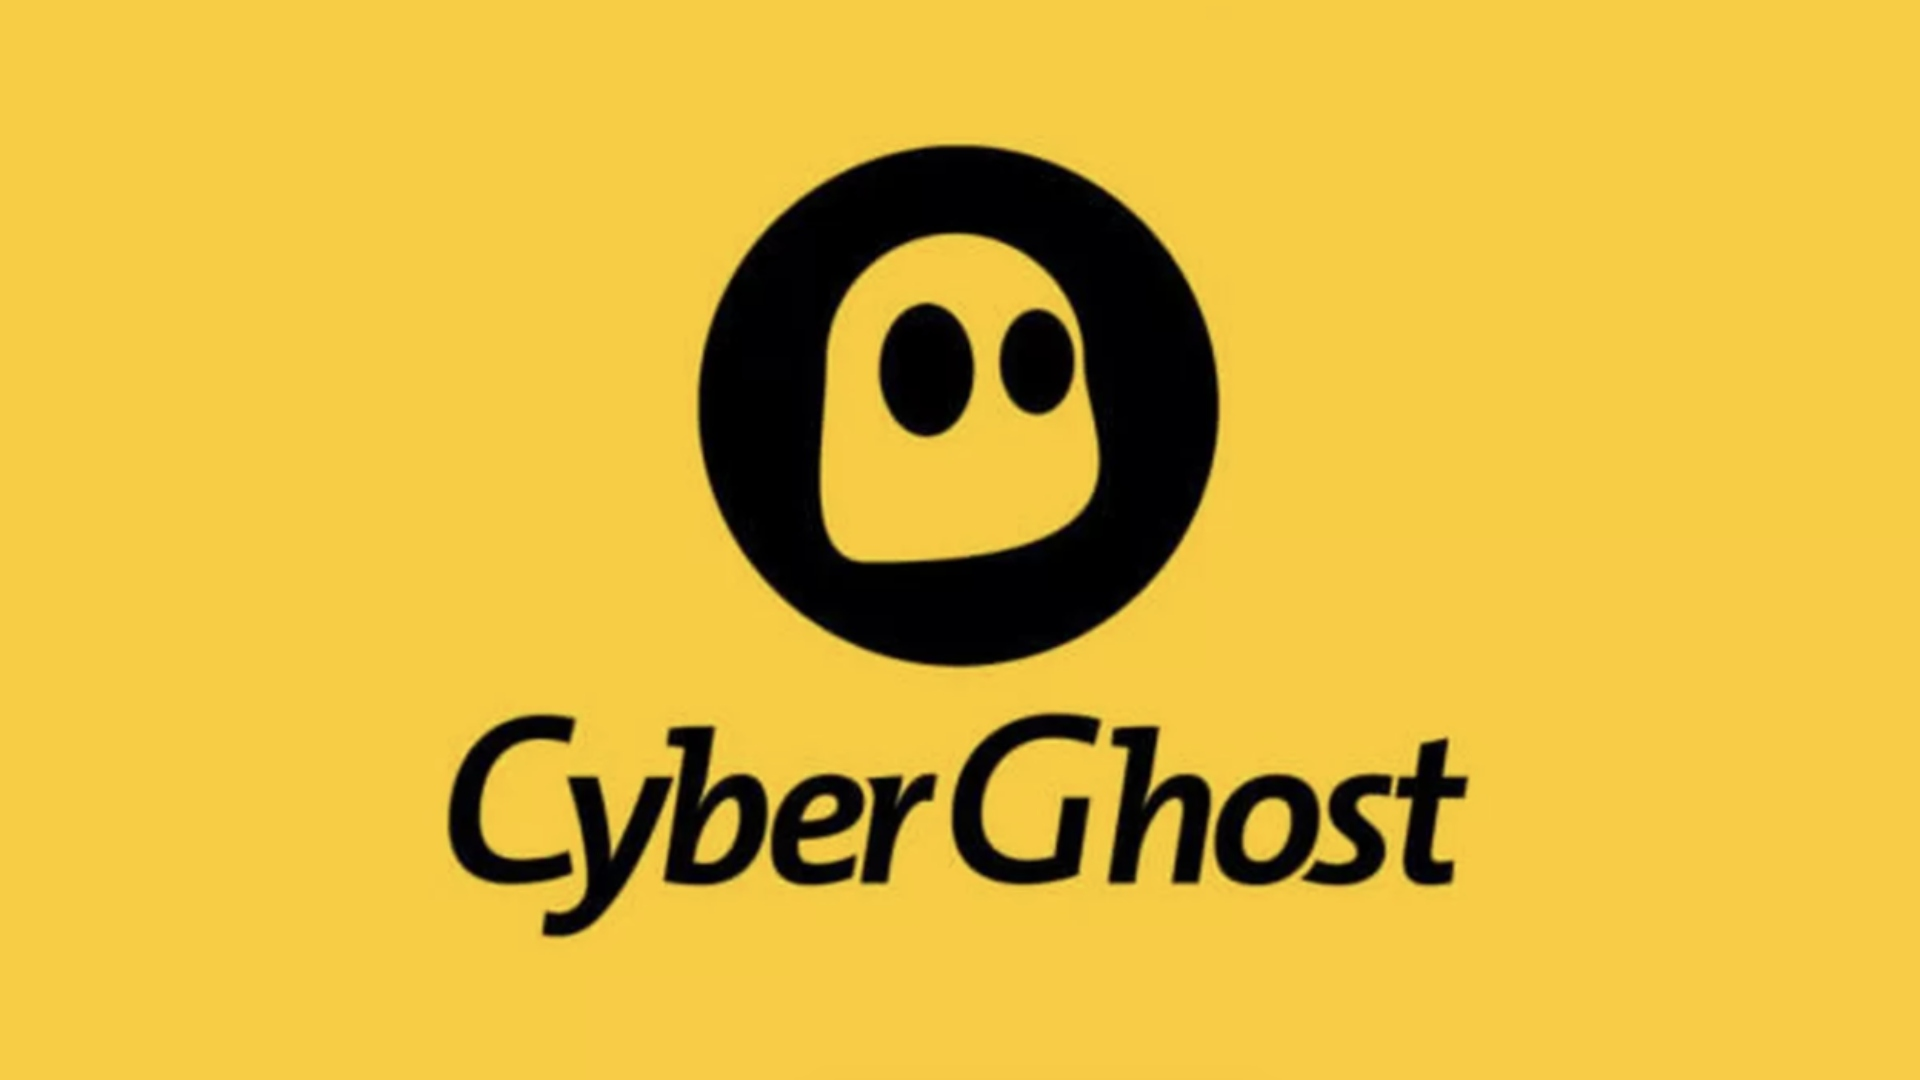 Najlepsze aplikacje VPN — Cyberghost.  Jej logo jest żółte i przedstawia ducha.